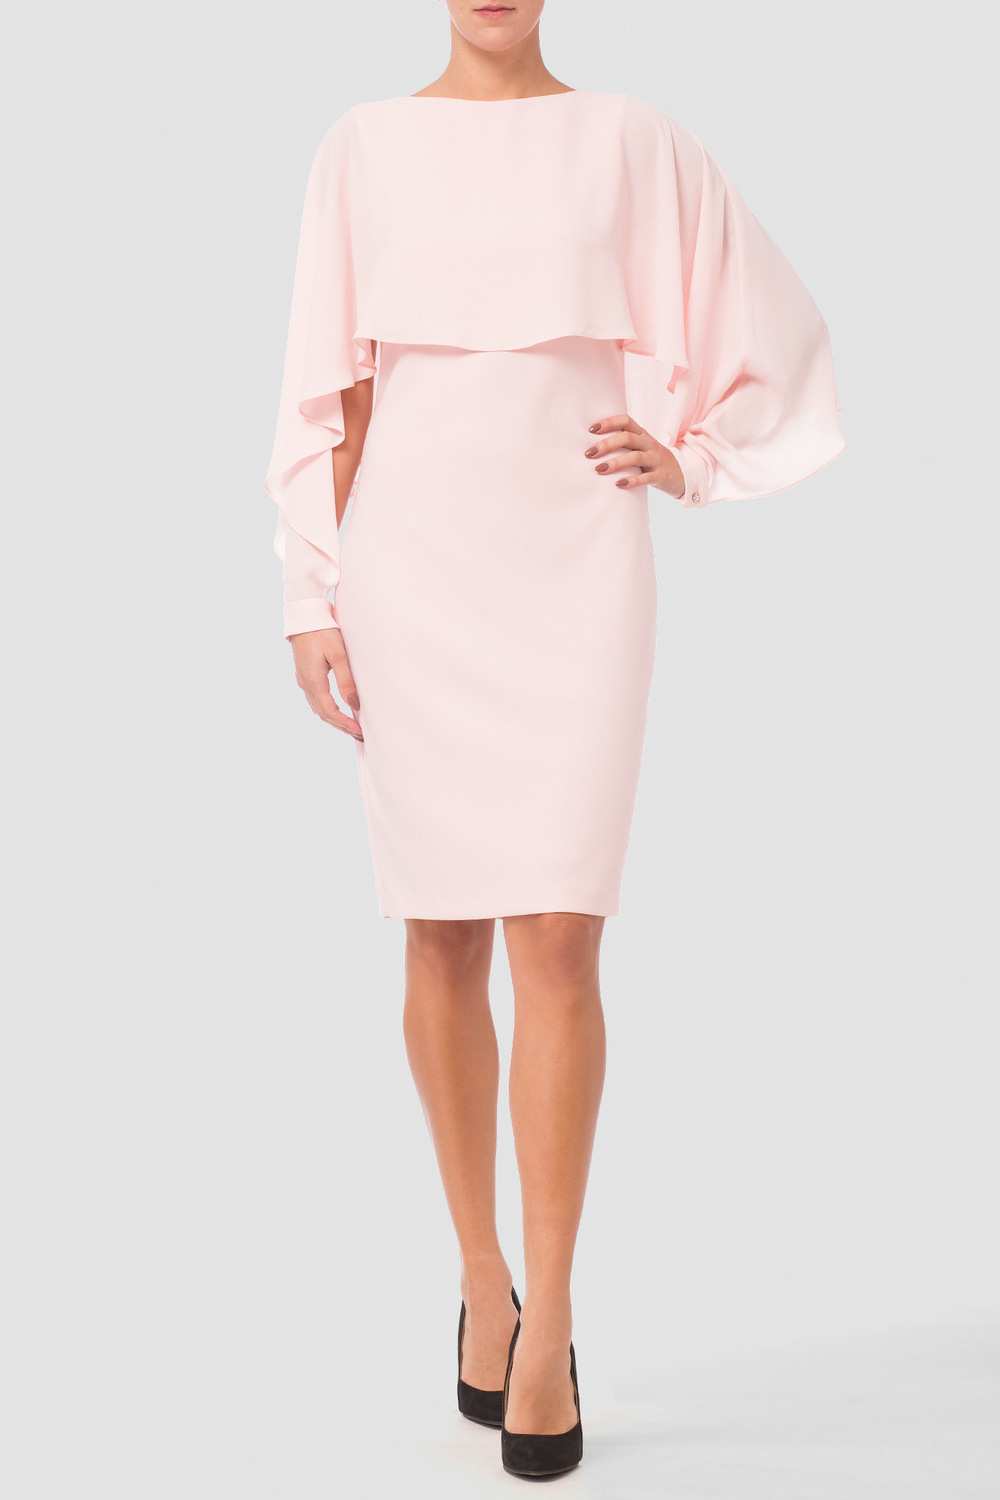 Joseph Ribkoff dress style 181261. Powder Pink 181